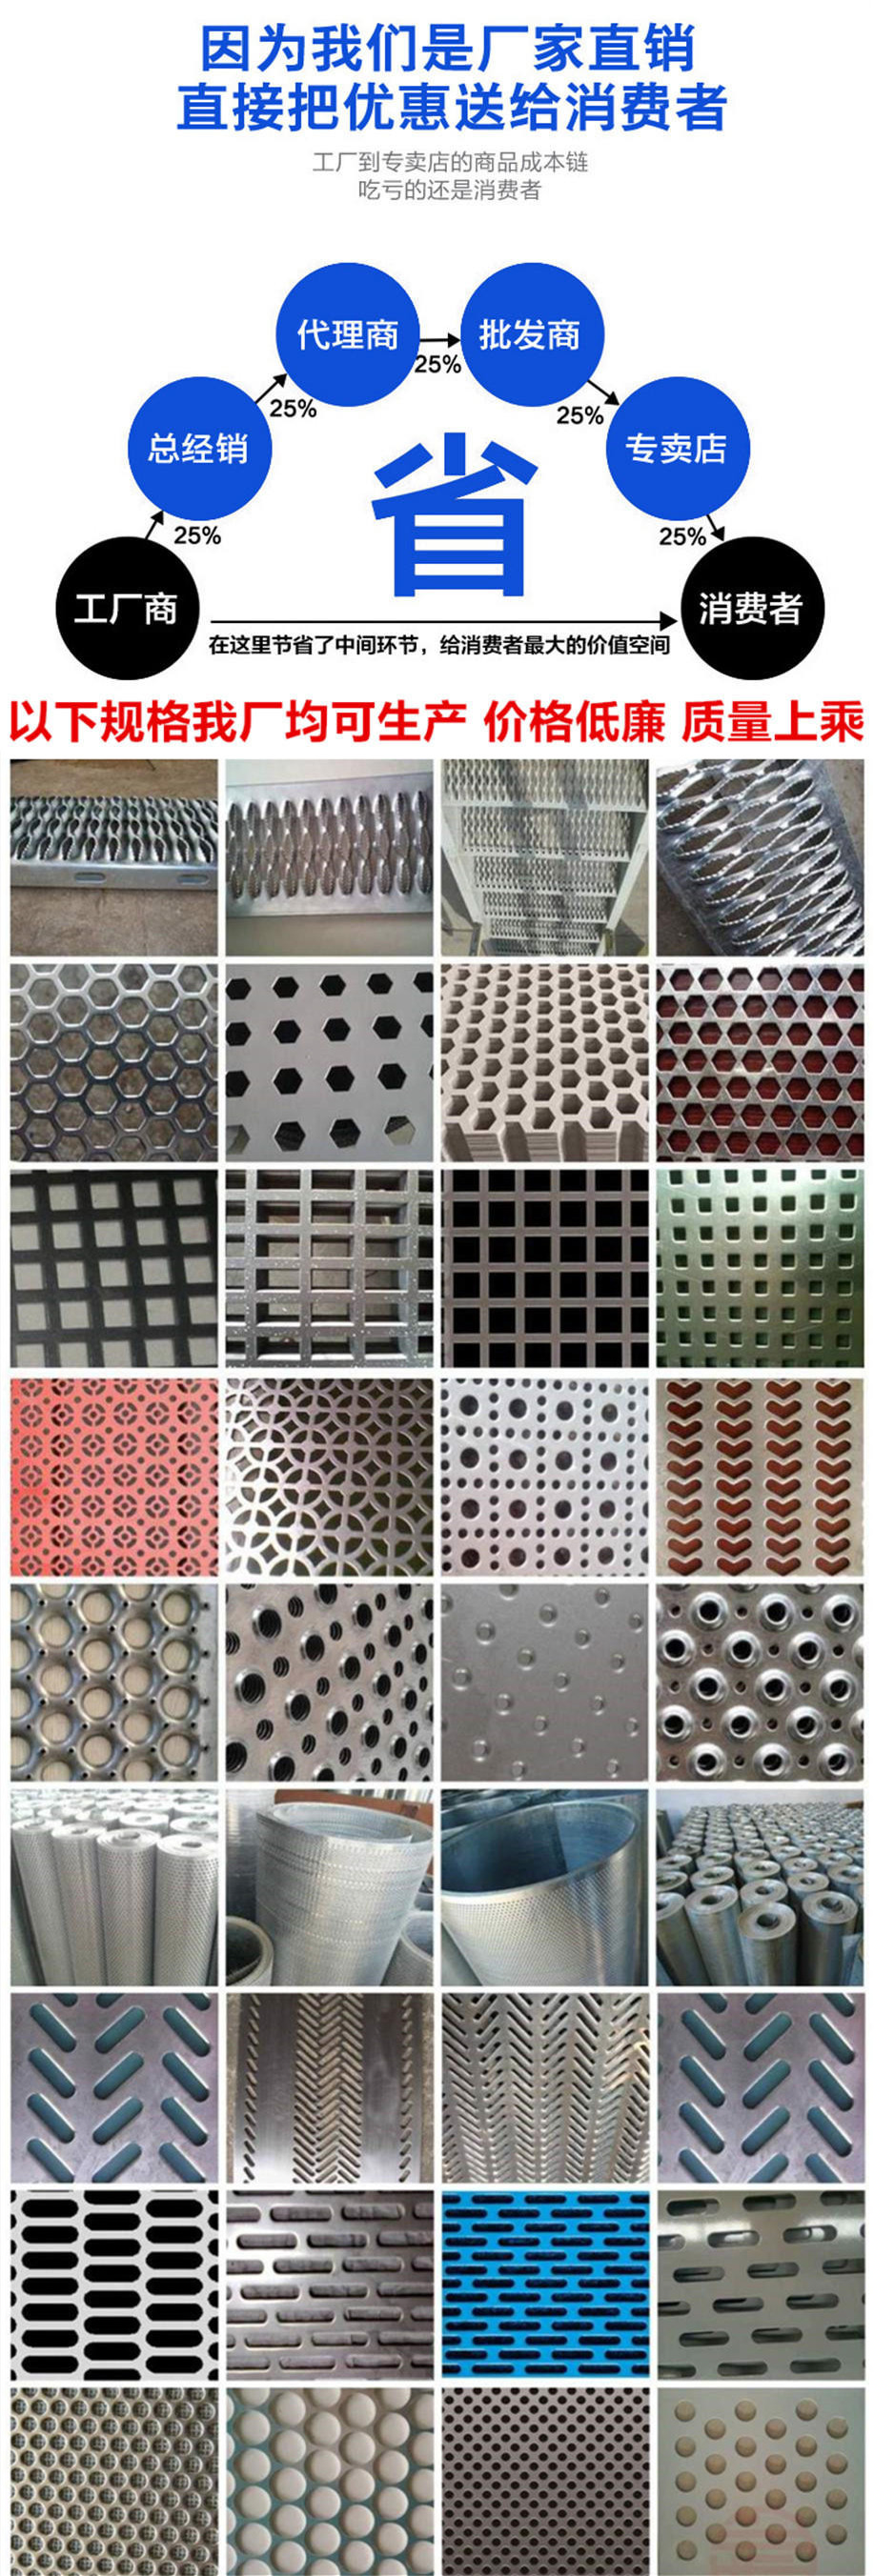 铁板圆孔板系列产品展示